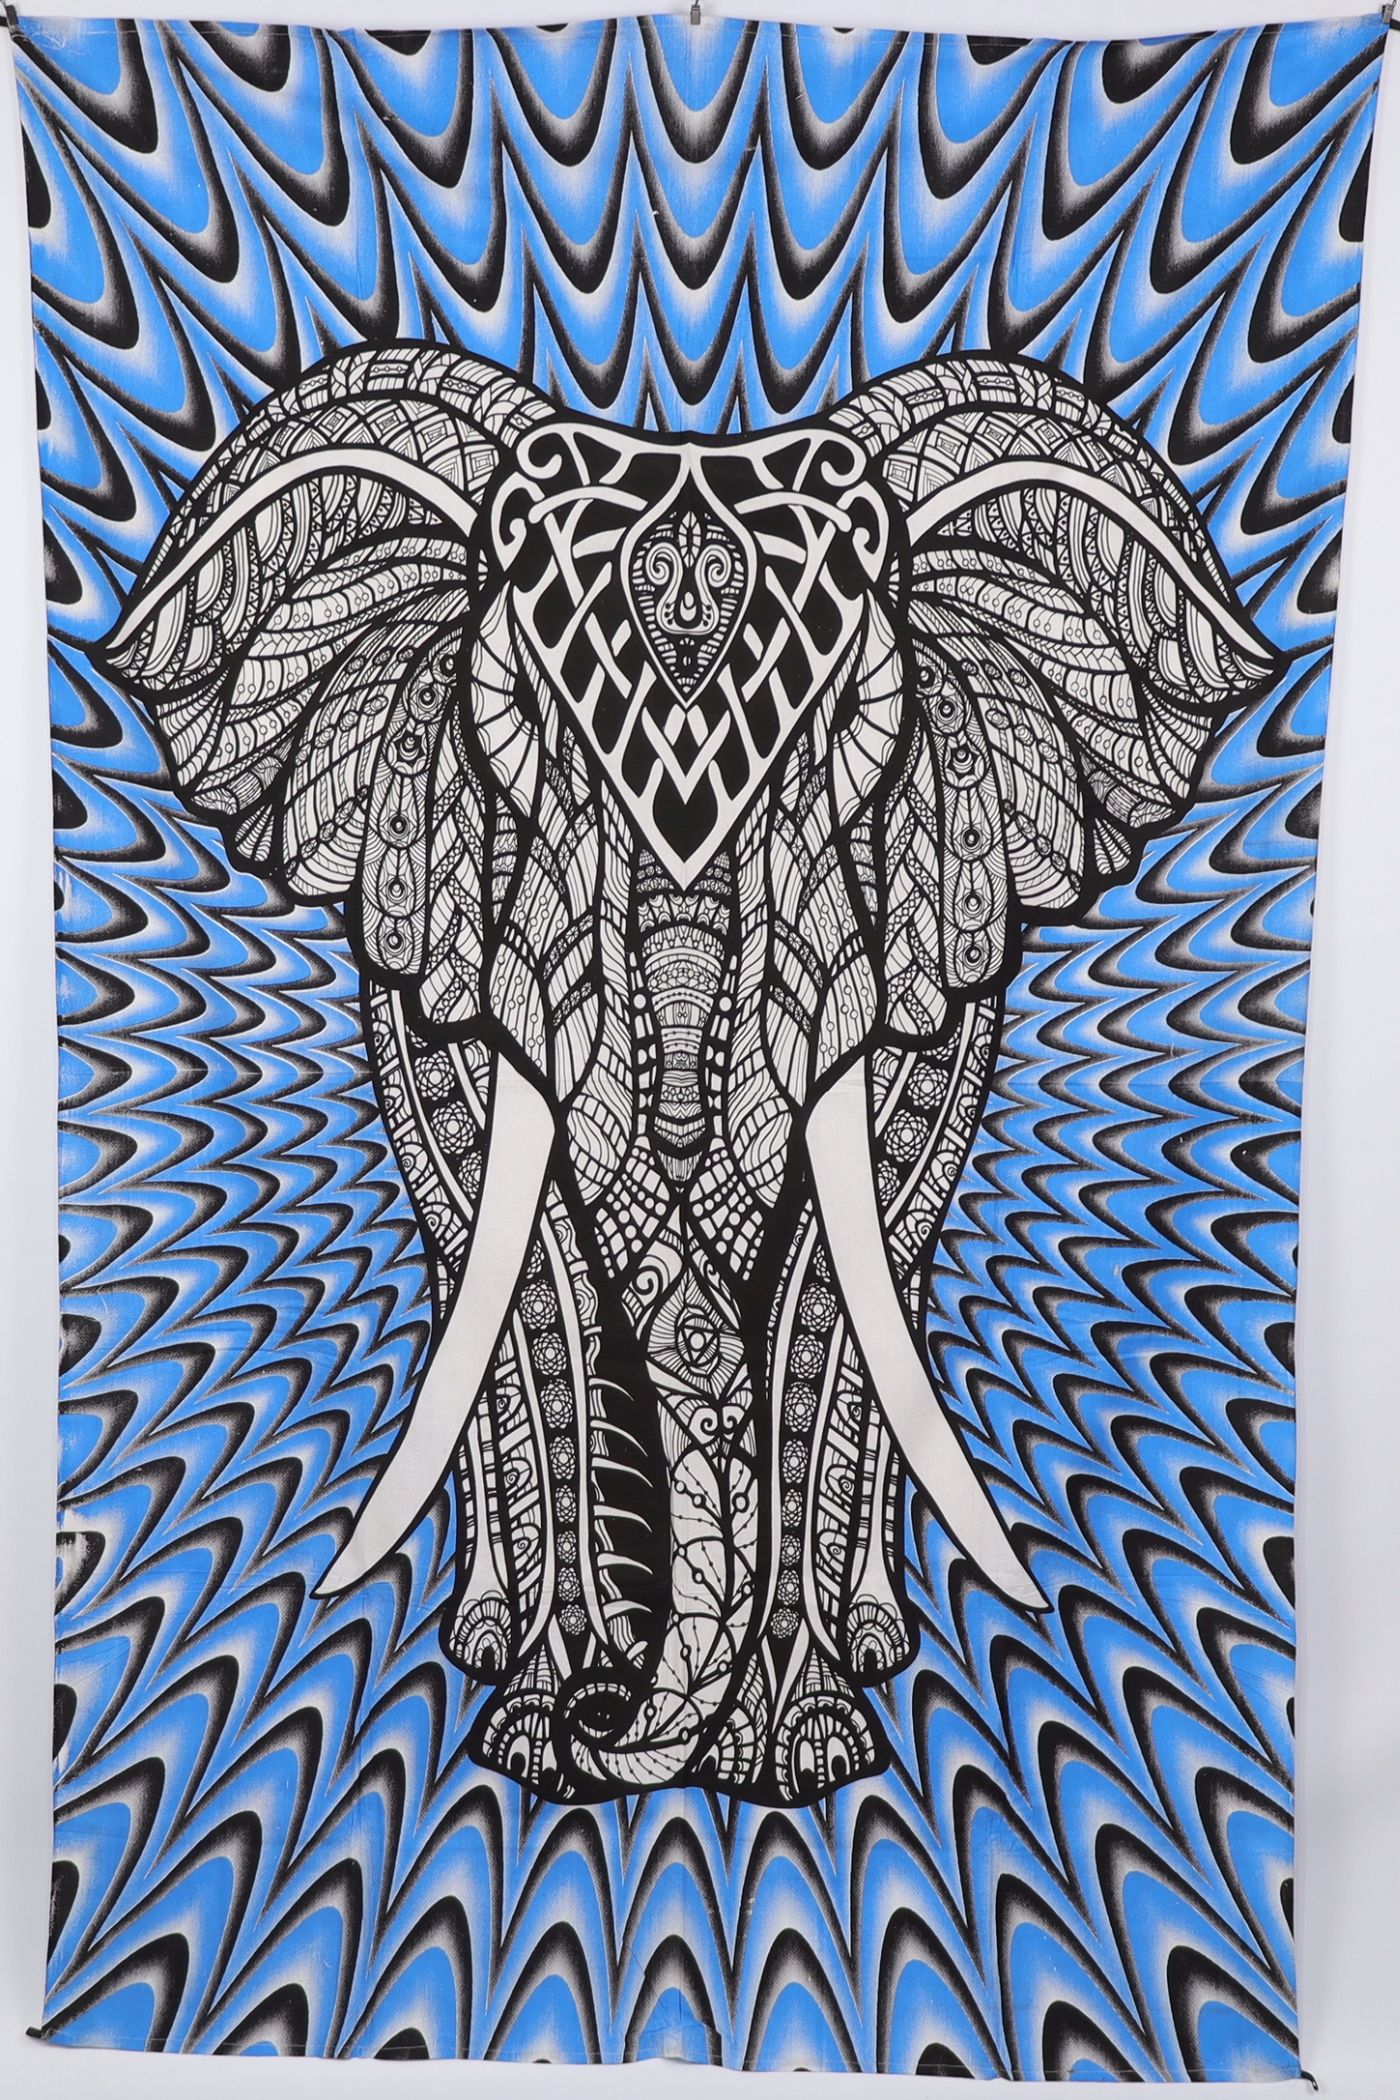 Wandtuch XL 130x210 - Elefant mit Stoßzahn - 100% Baumwolle - detailreicher indischer Druck - dekoratives Tuch, Wandbild, Tagesdecke, Bedcover, Vorhang, Picknick-Decke, Strandtuch